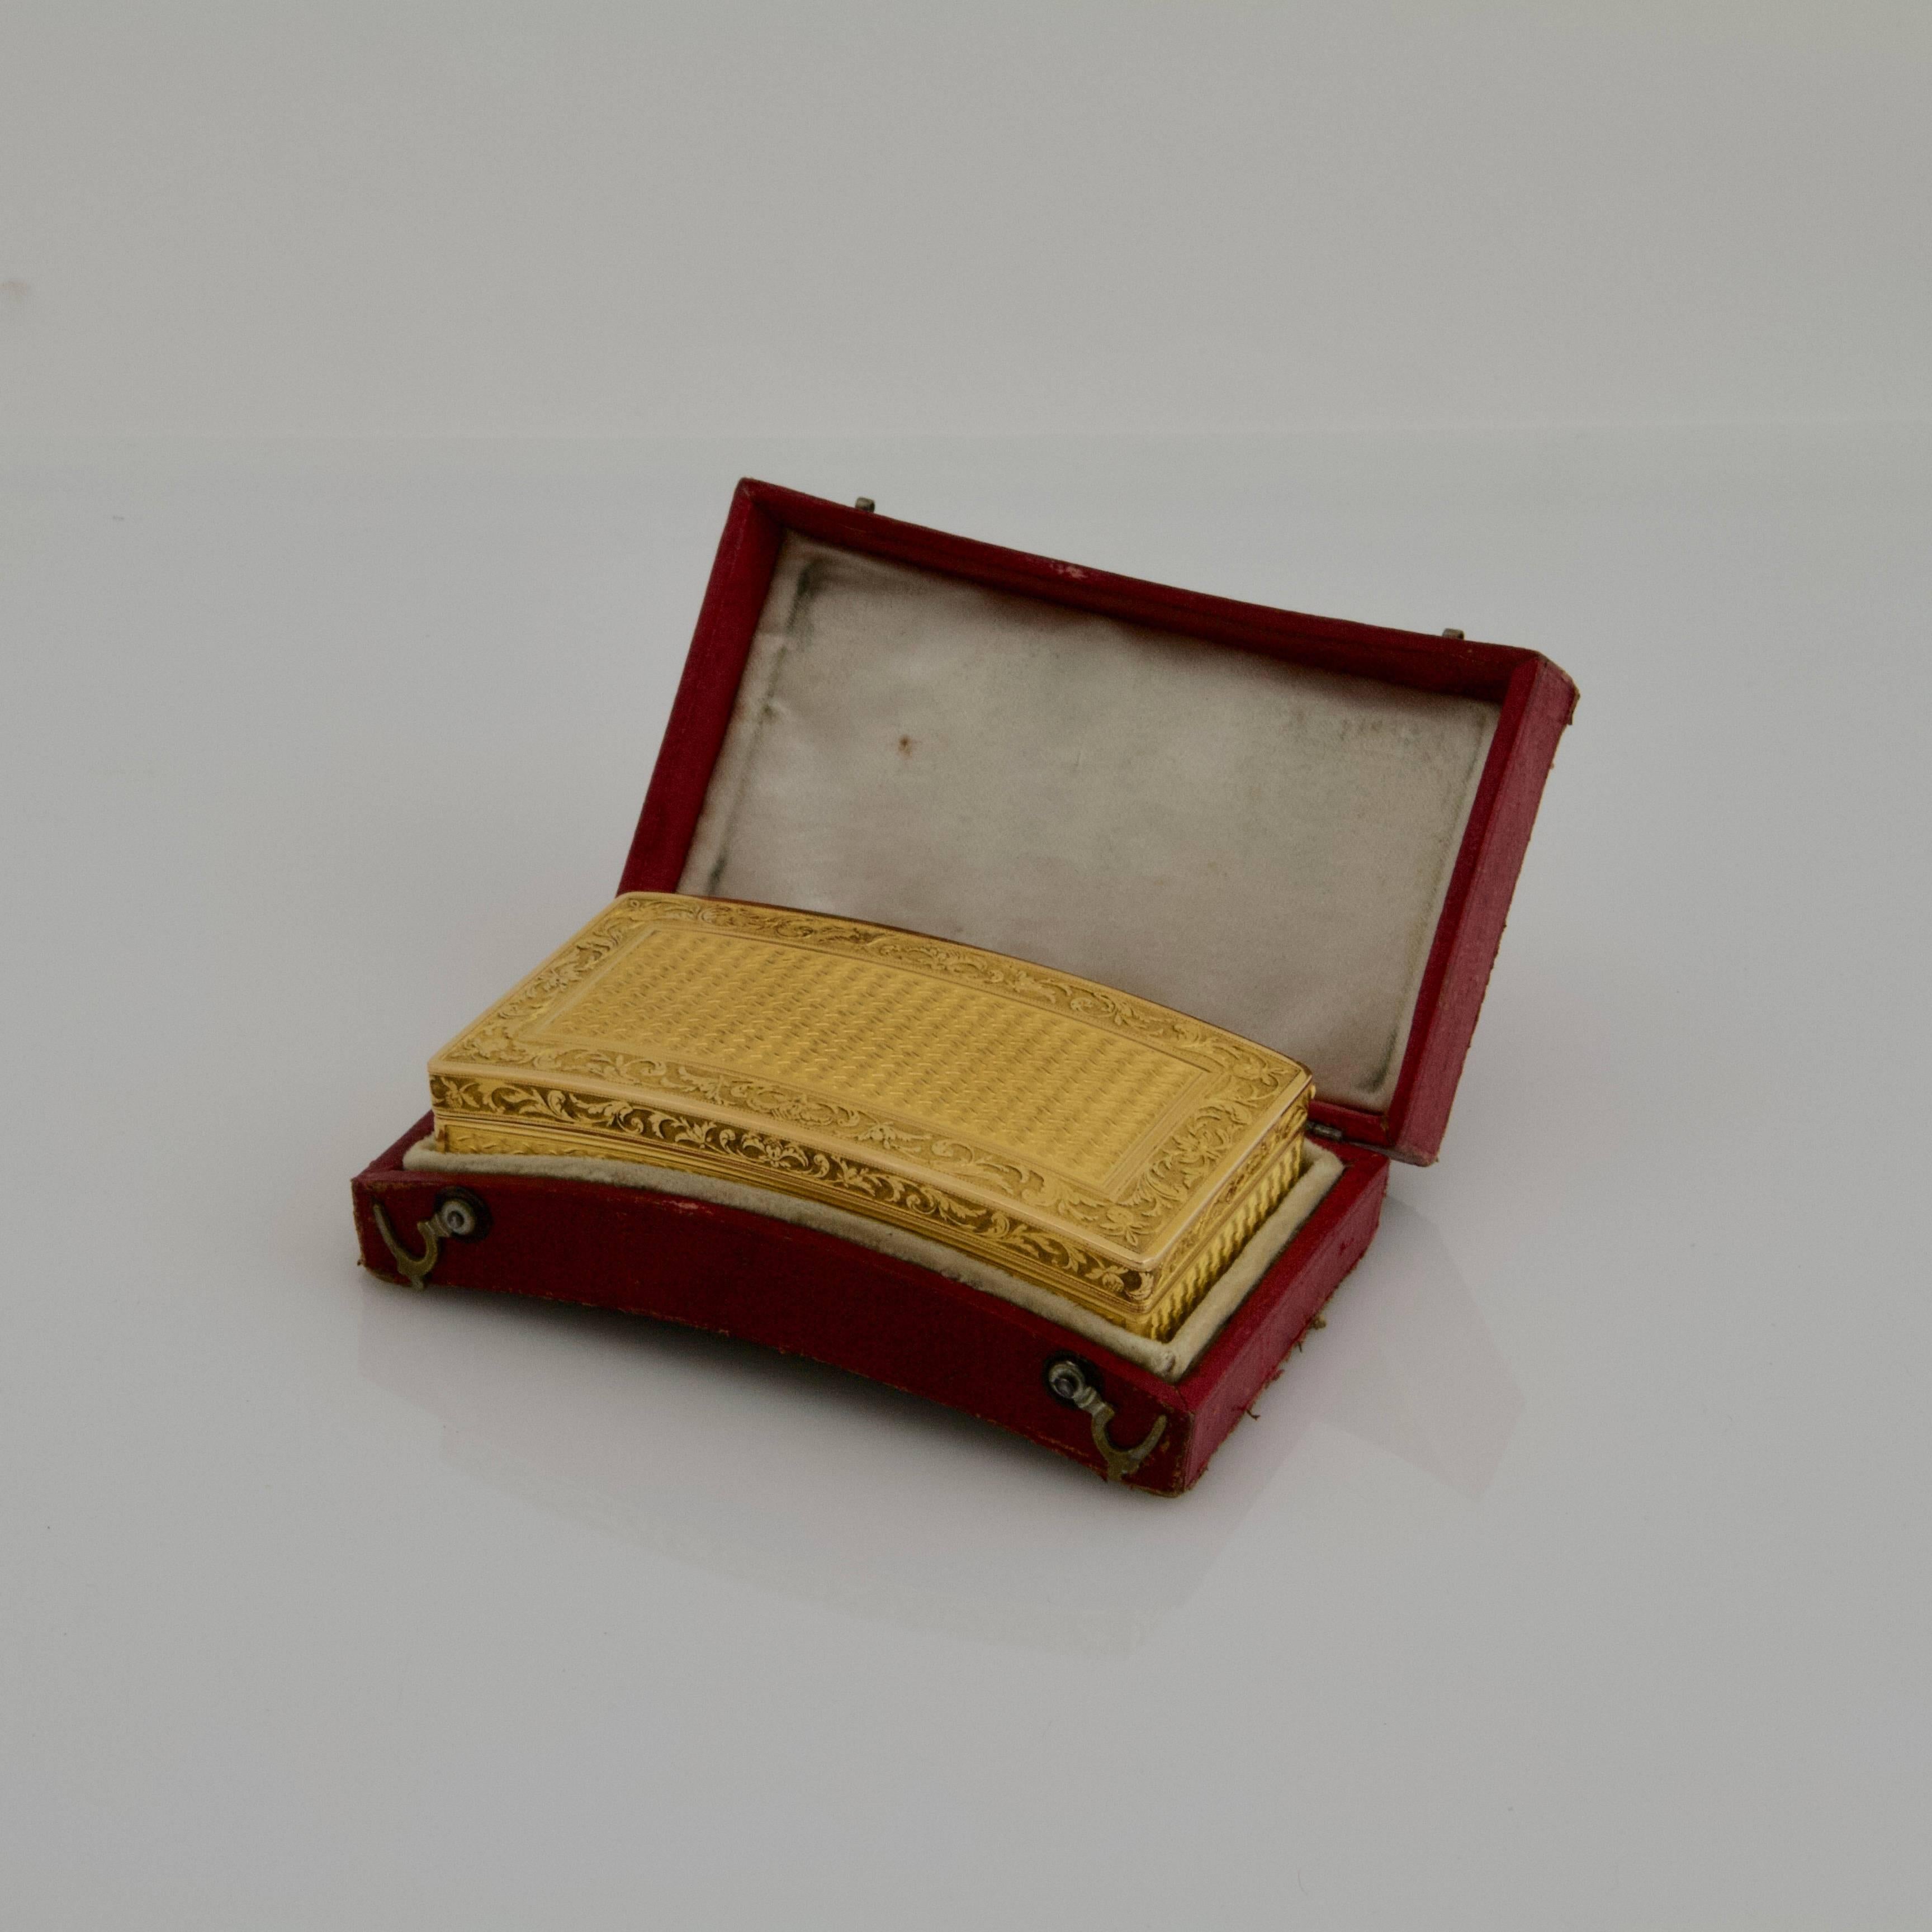 Empire Antique Gold Snuffbox by Adrien-Maximilien Vachette, Paris, 1795-1797